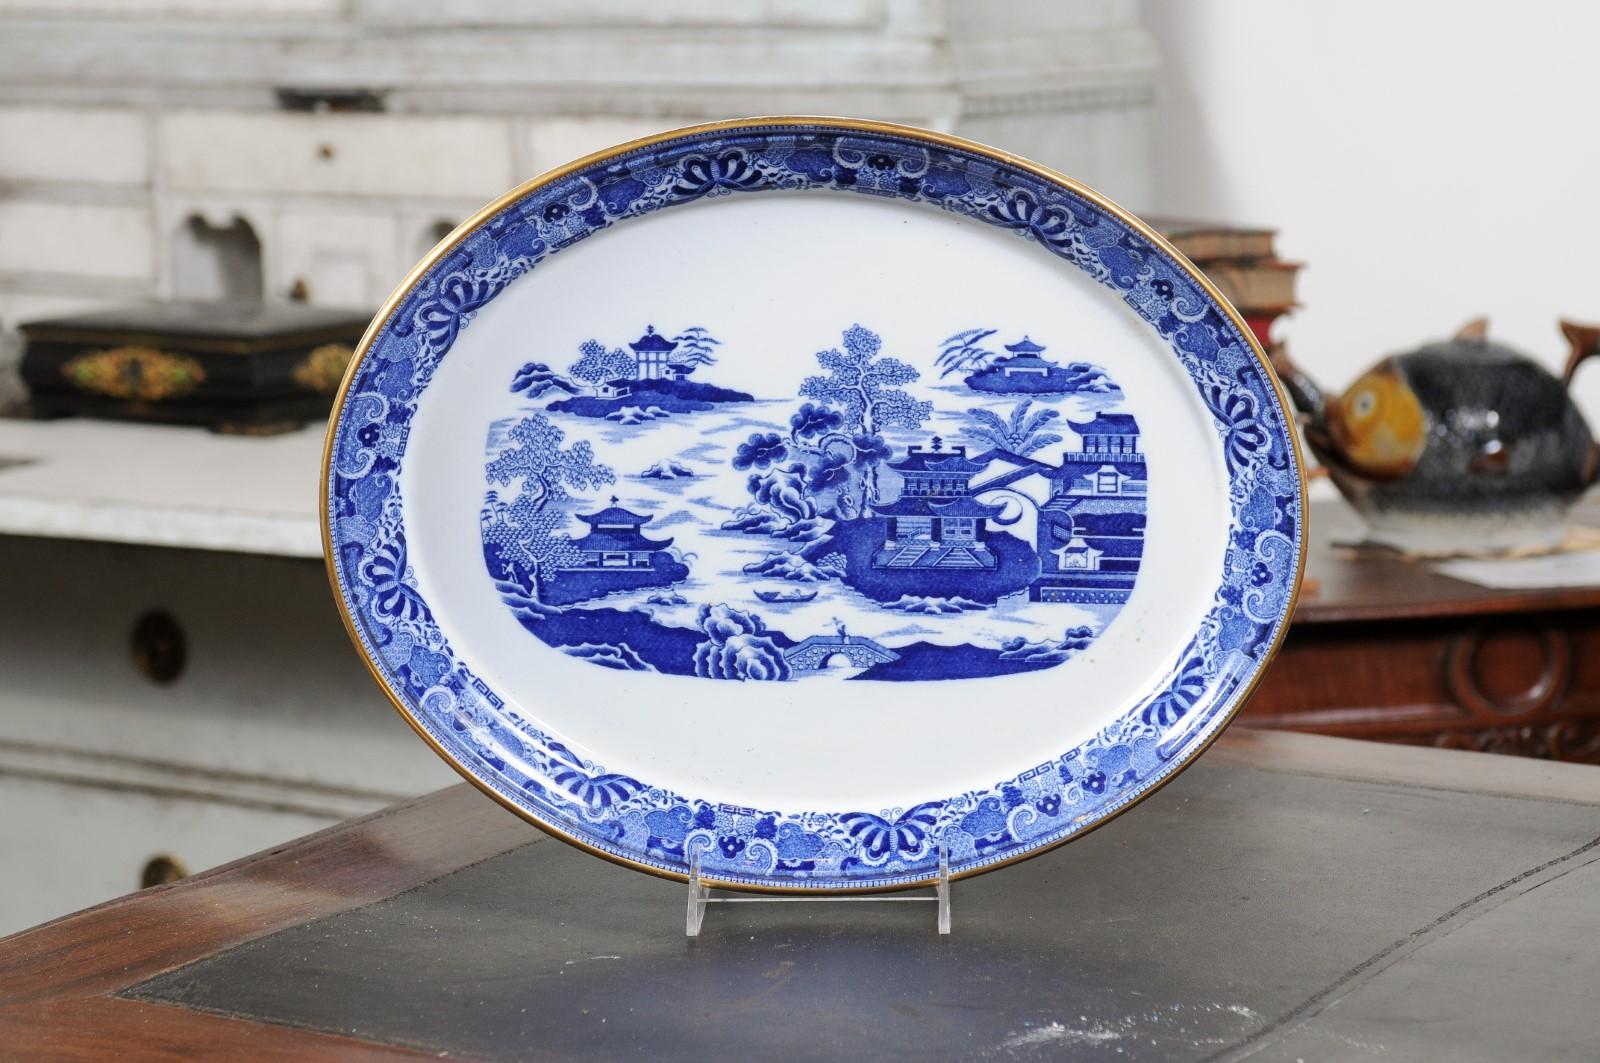 Plat ovale en porcelaine anglaise bleu et blanc du XIXe siècle, avec des motifs de Chinoiserie. Créé en Angleterre au cours du XIXe siècle, ce plat en porcelaine présente un fond blanc parfaitement mis en valeur par un motif Chinoiserie. Des